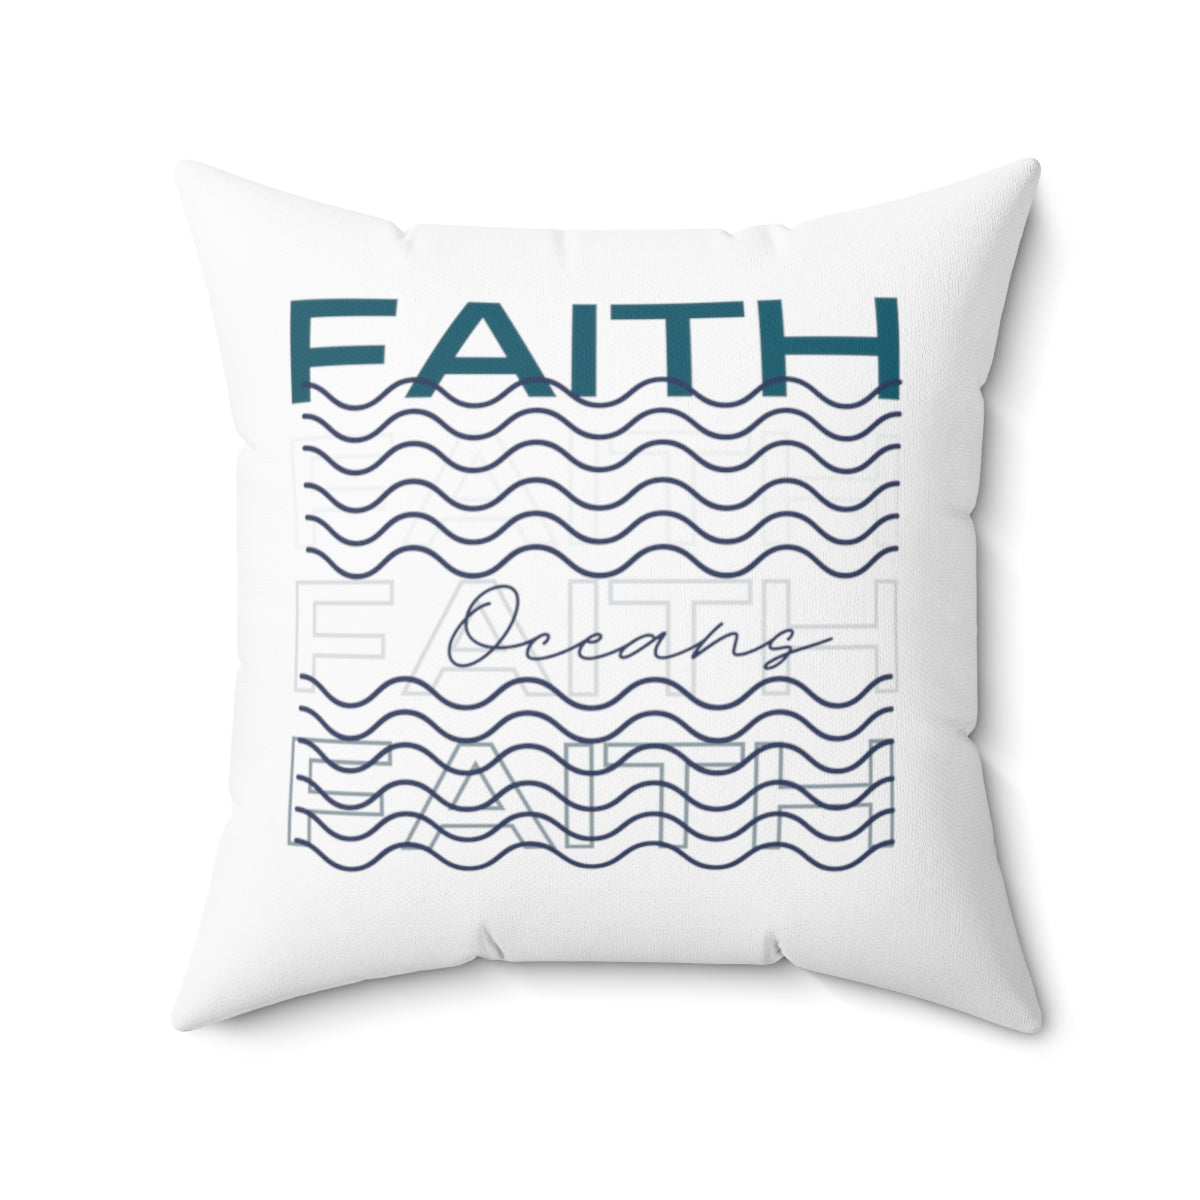 Faith Throw Pillow